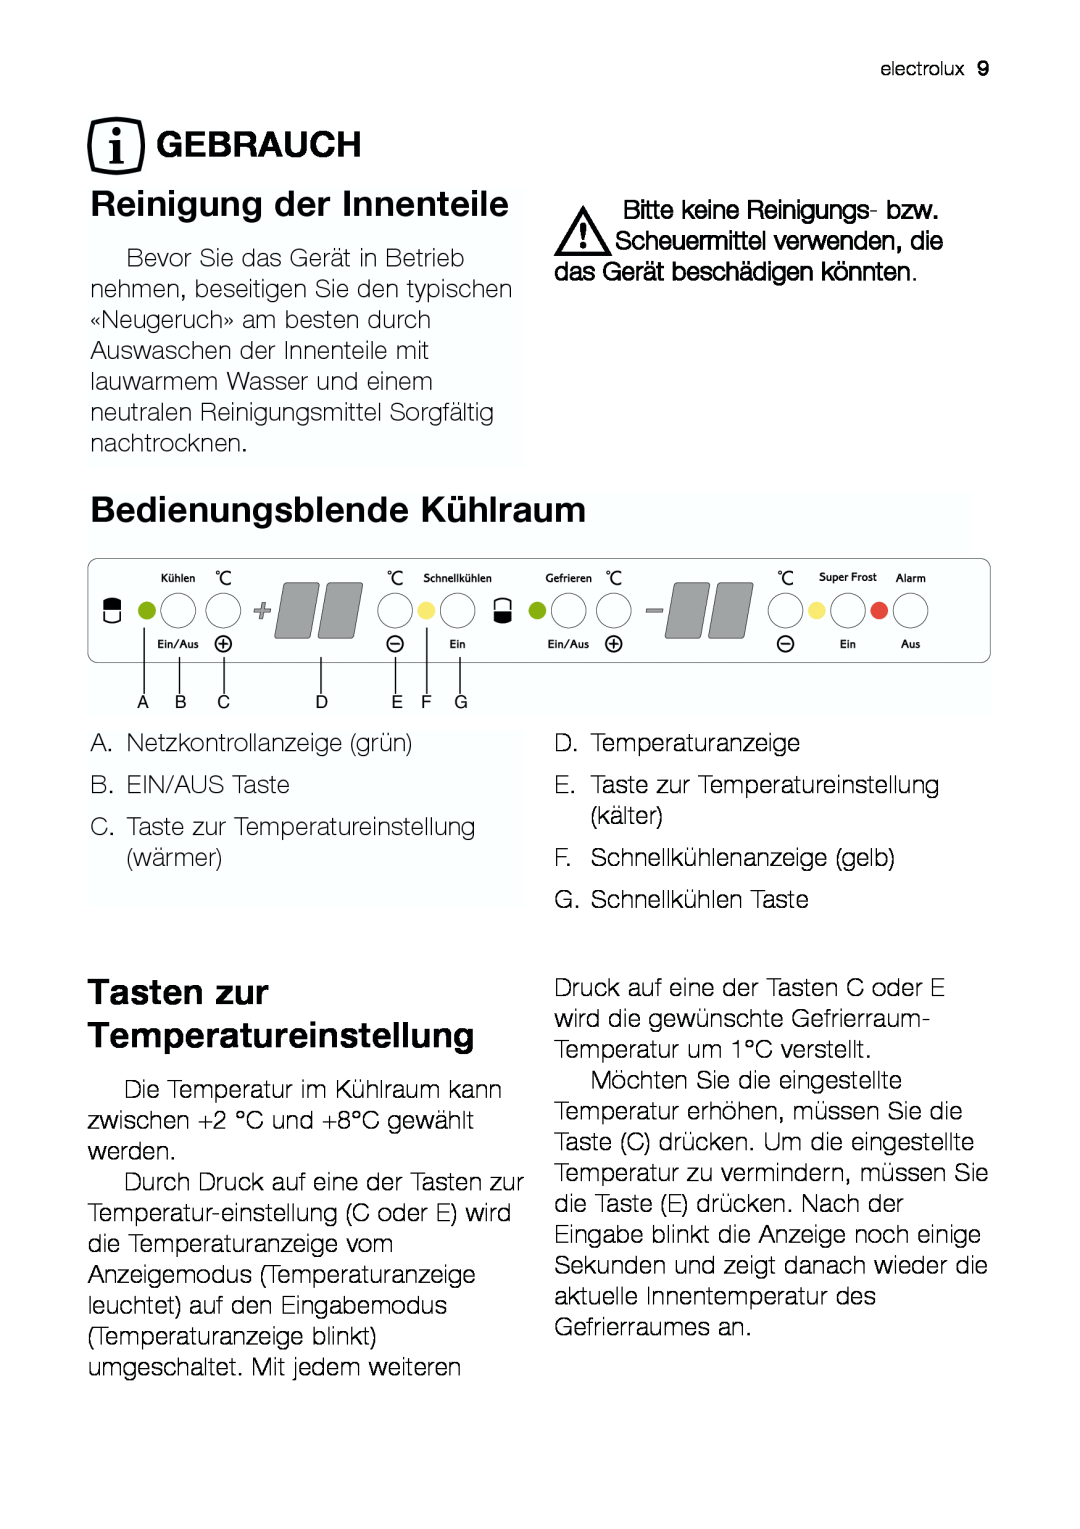 Electrolux JCZ 94181 manual GEBRAUCH Reinigung der Innenteile, Bedienungsblende Kühlraum, Tasten zur Temperatureinstellung 